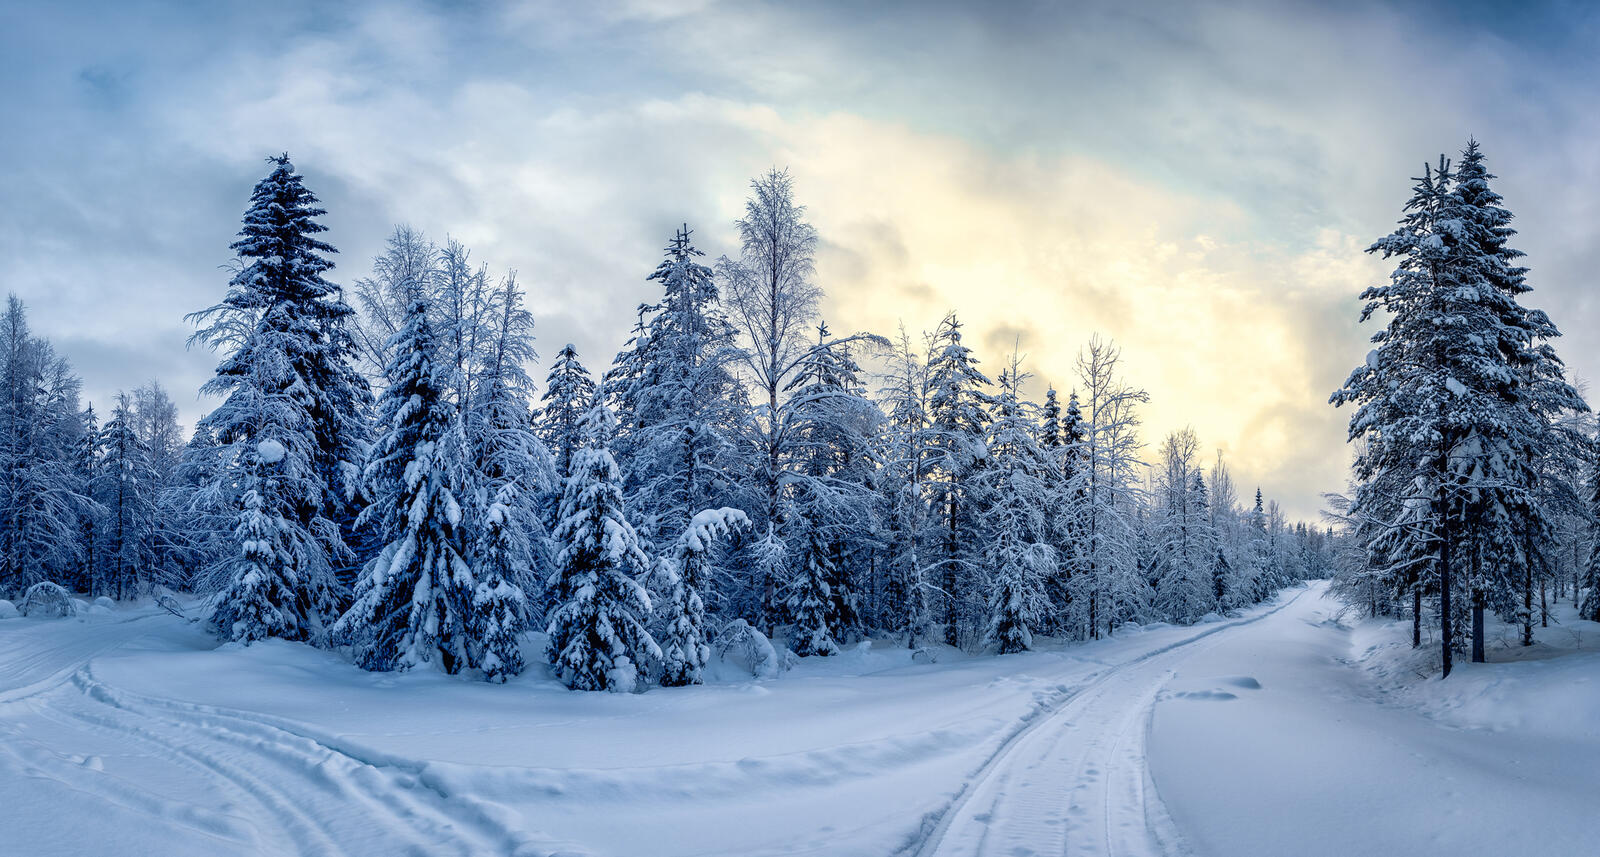 Обои Финляндия зима дорога на рабочий стол